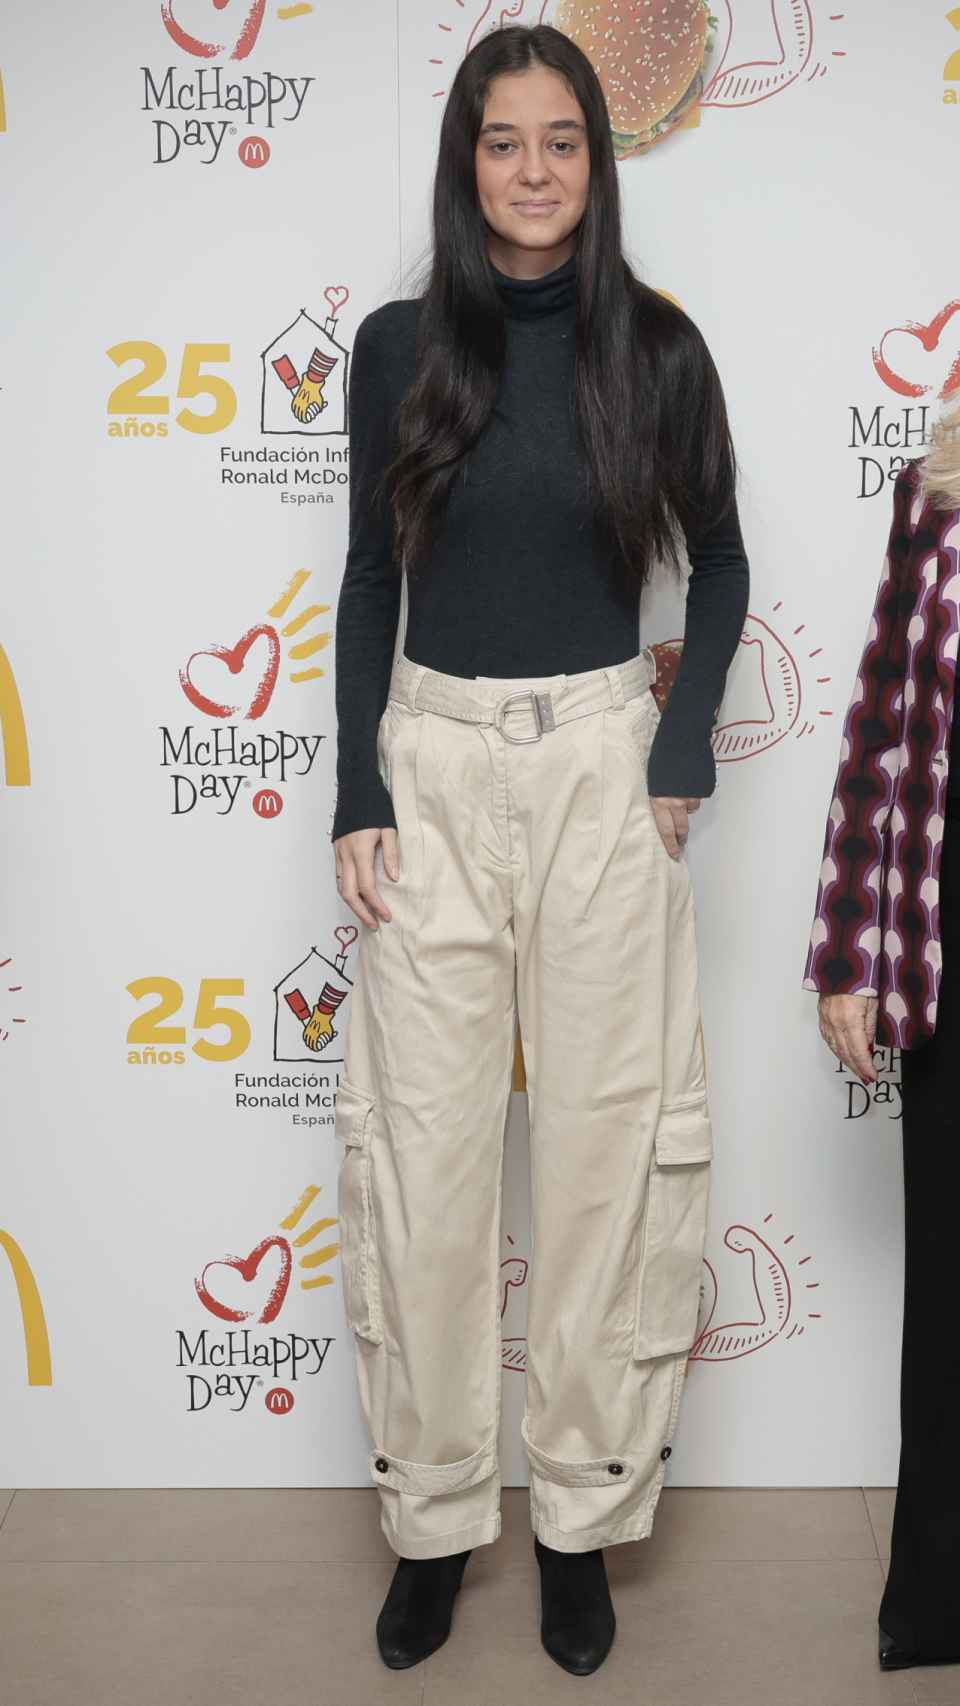 Victoria Federica en el evento de la fundación Ronald McDonald.